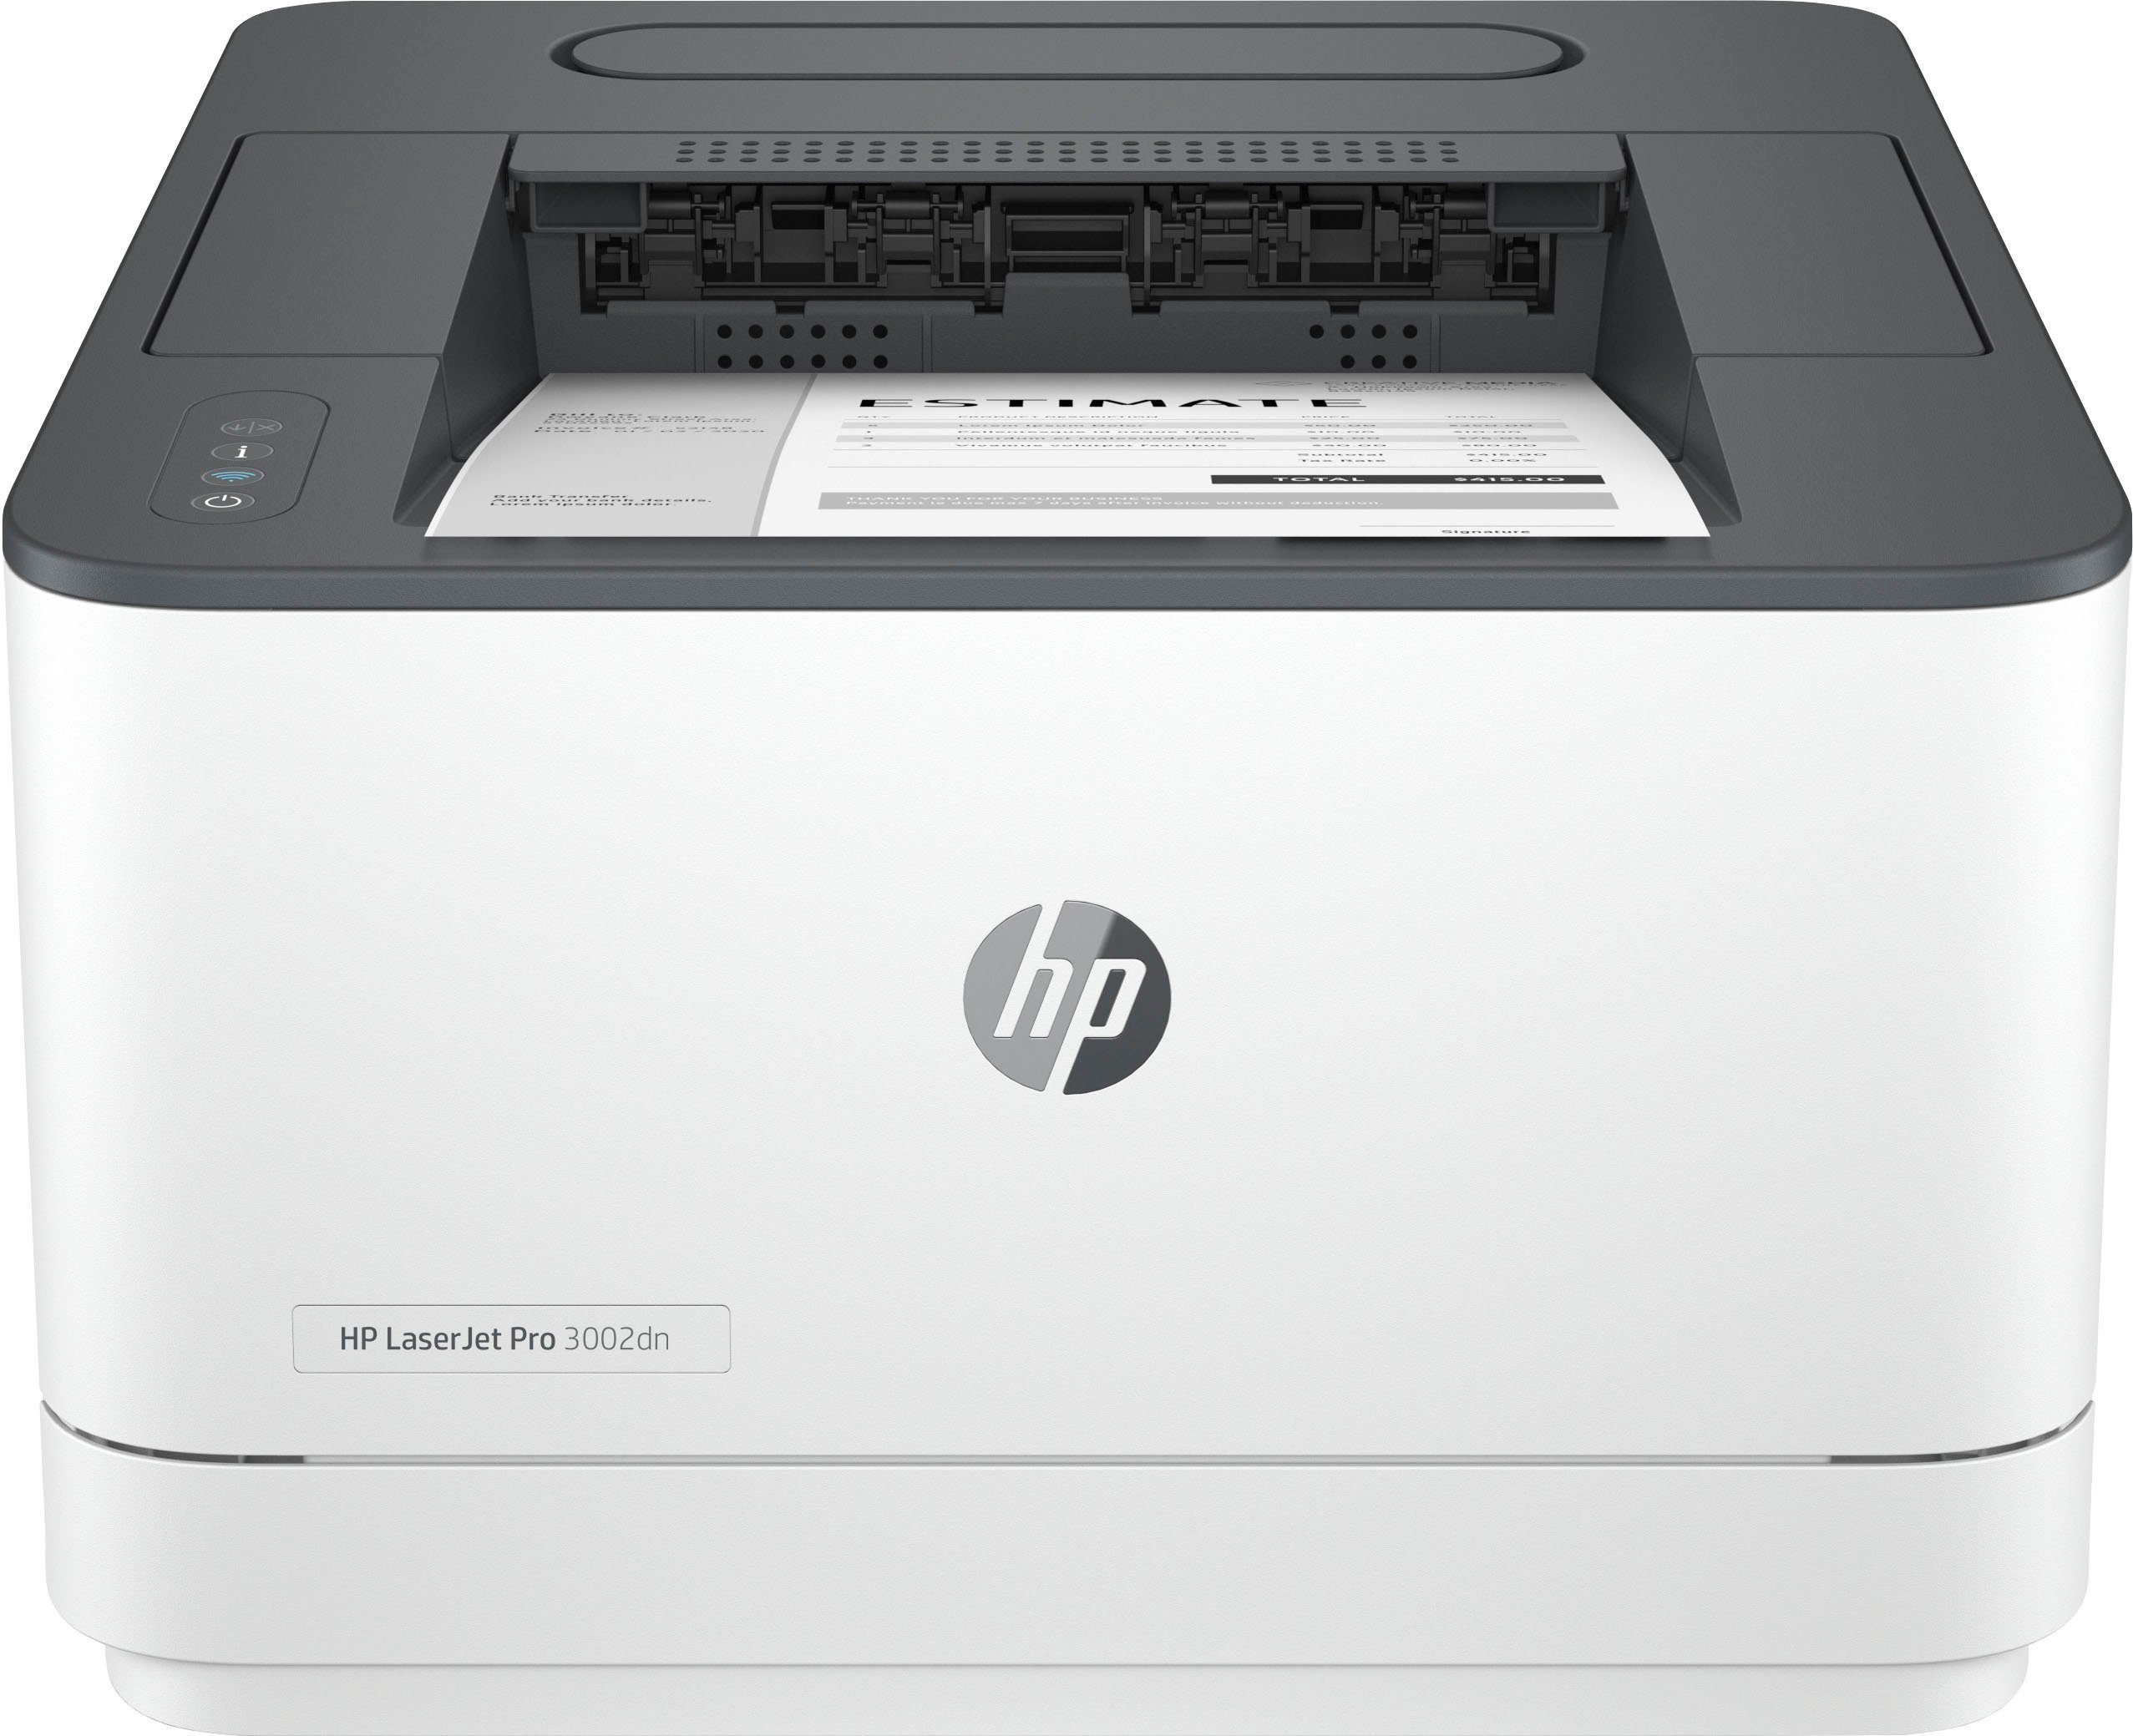 Pro HP kompatibel) (Ethernet), HP 3002dn LaserJet Laserdrucker, Ink Instant (LAN